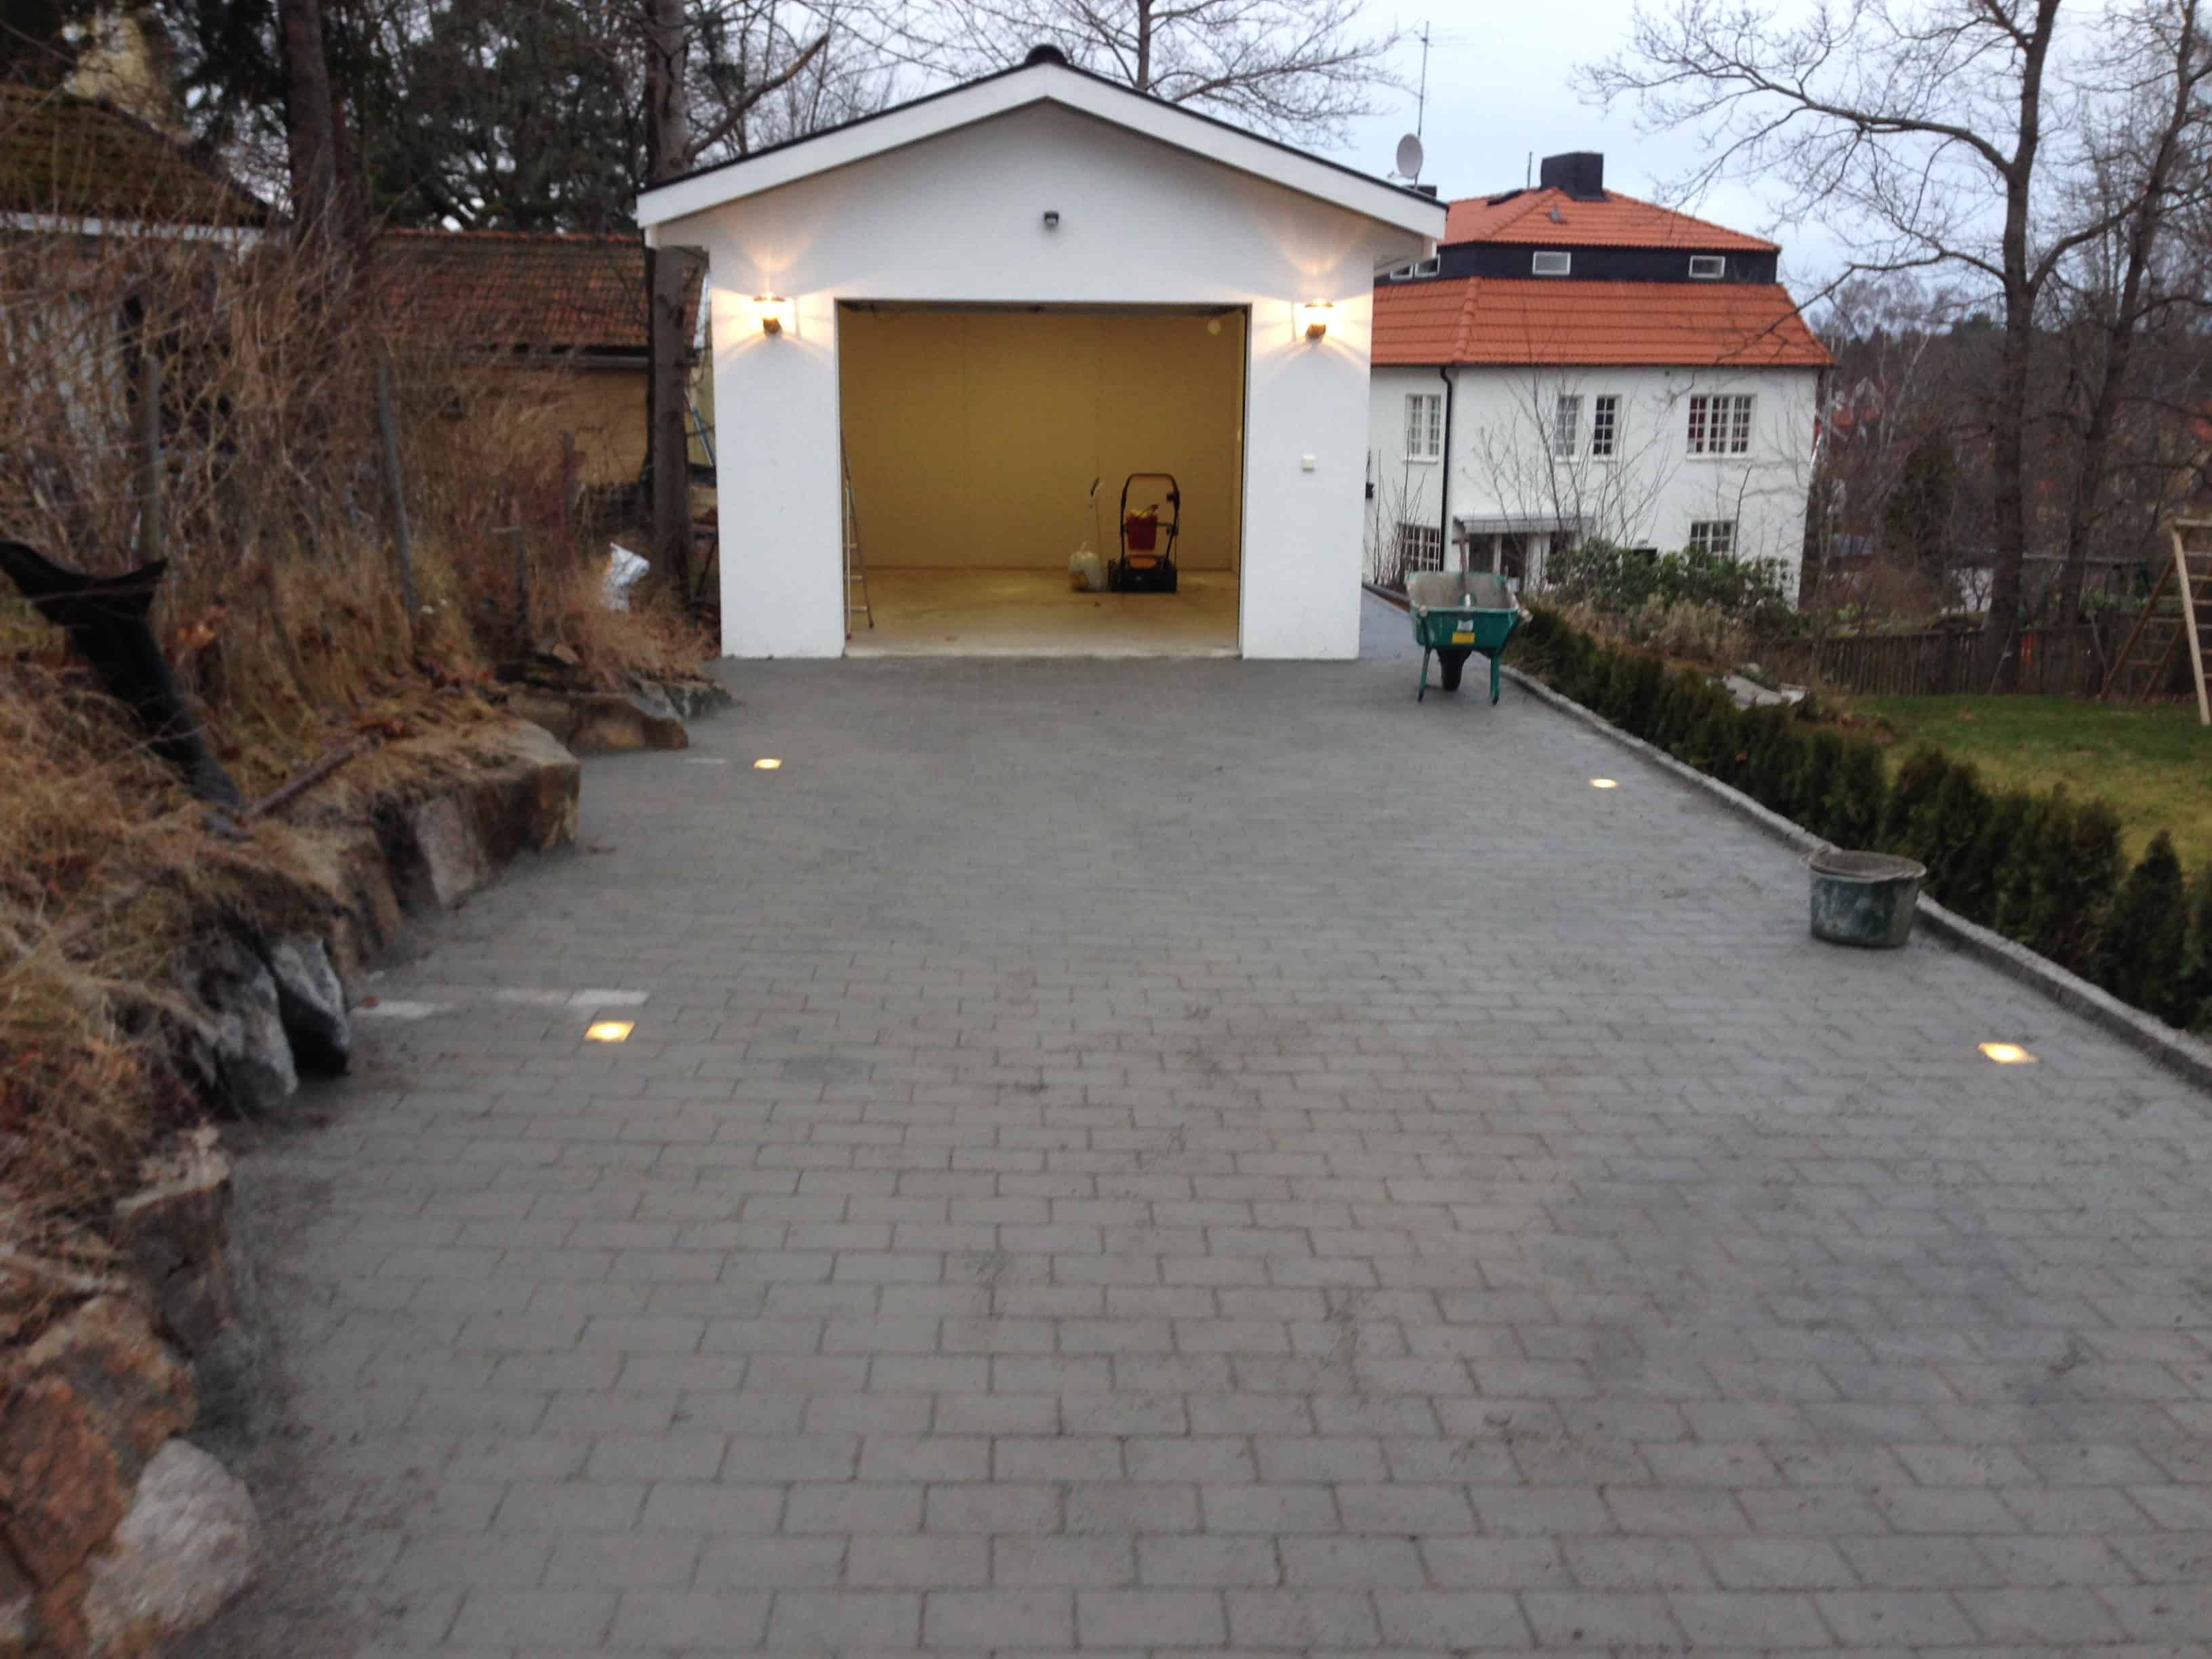 Referensjobb "Garageuppfart" utfört av Stockholms Bygg och Trädgårdsmästeri AB 